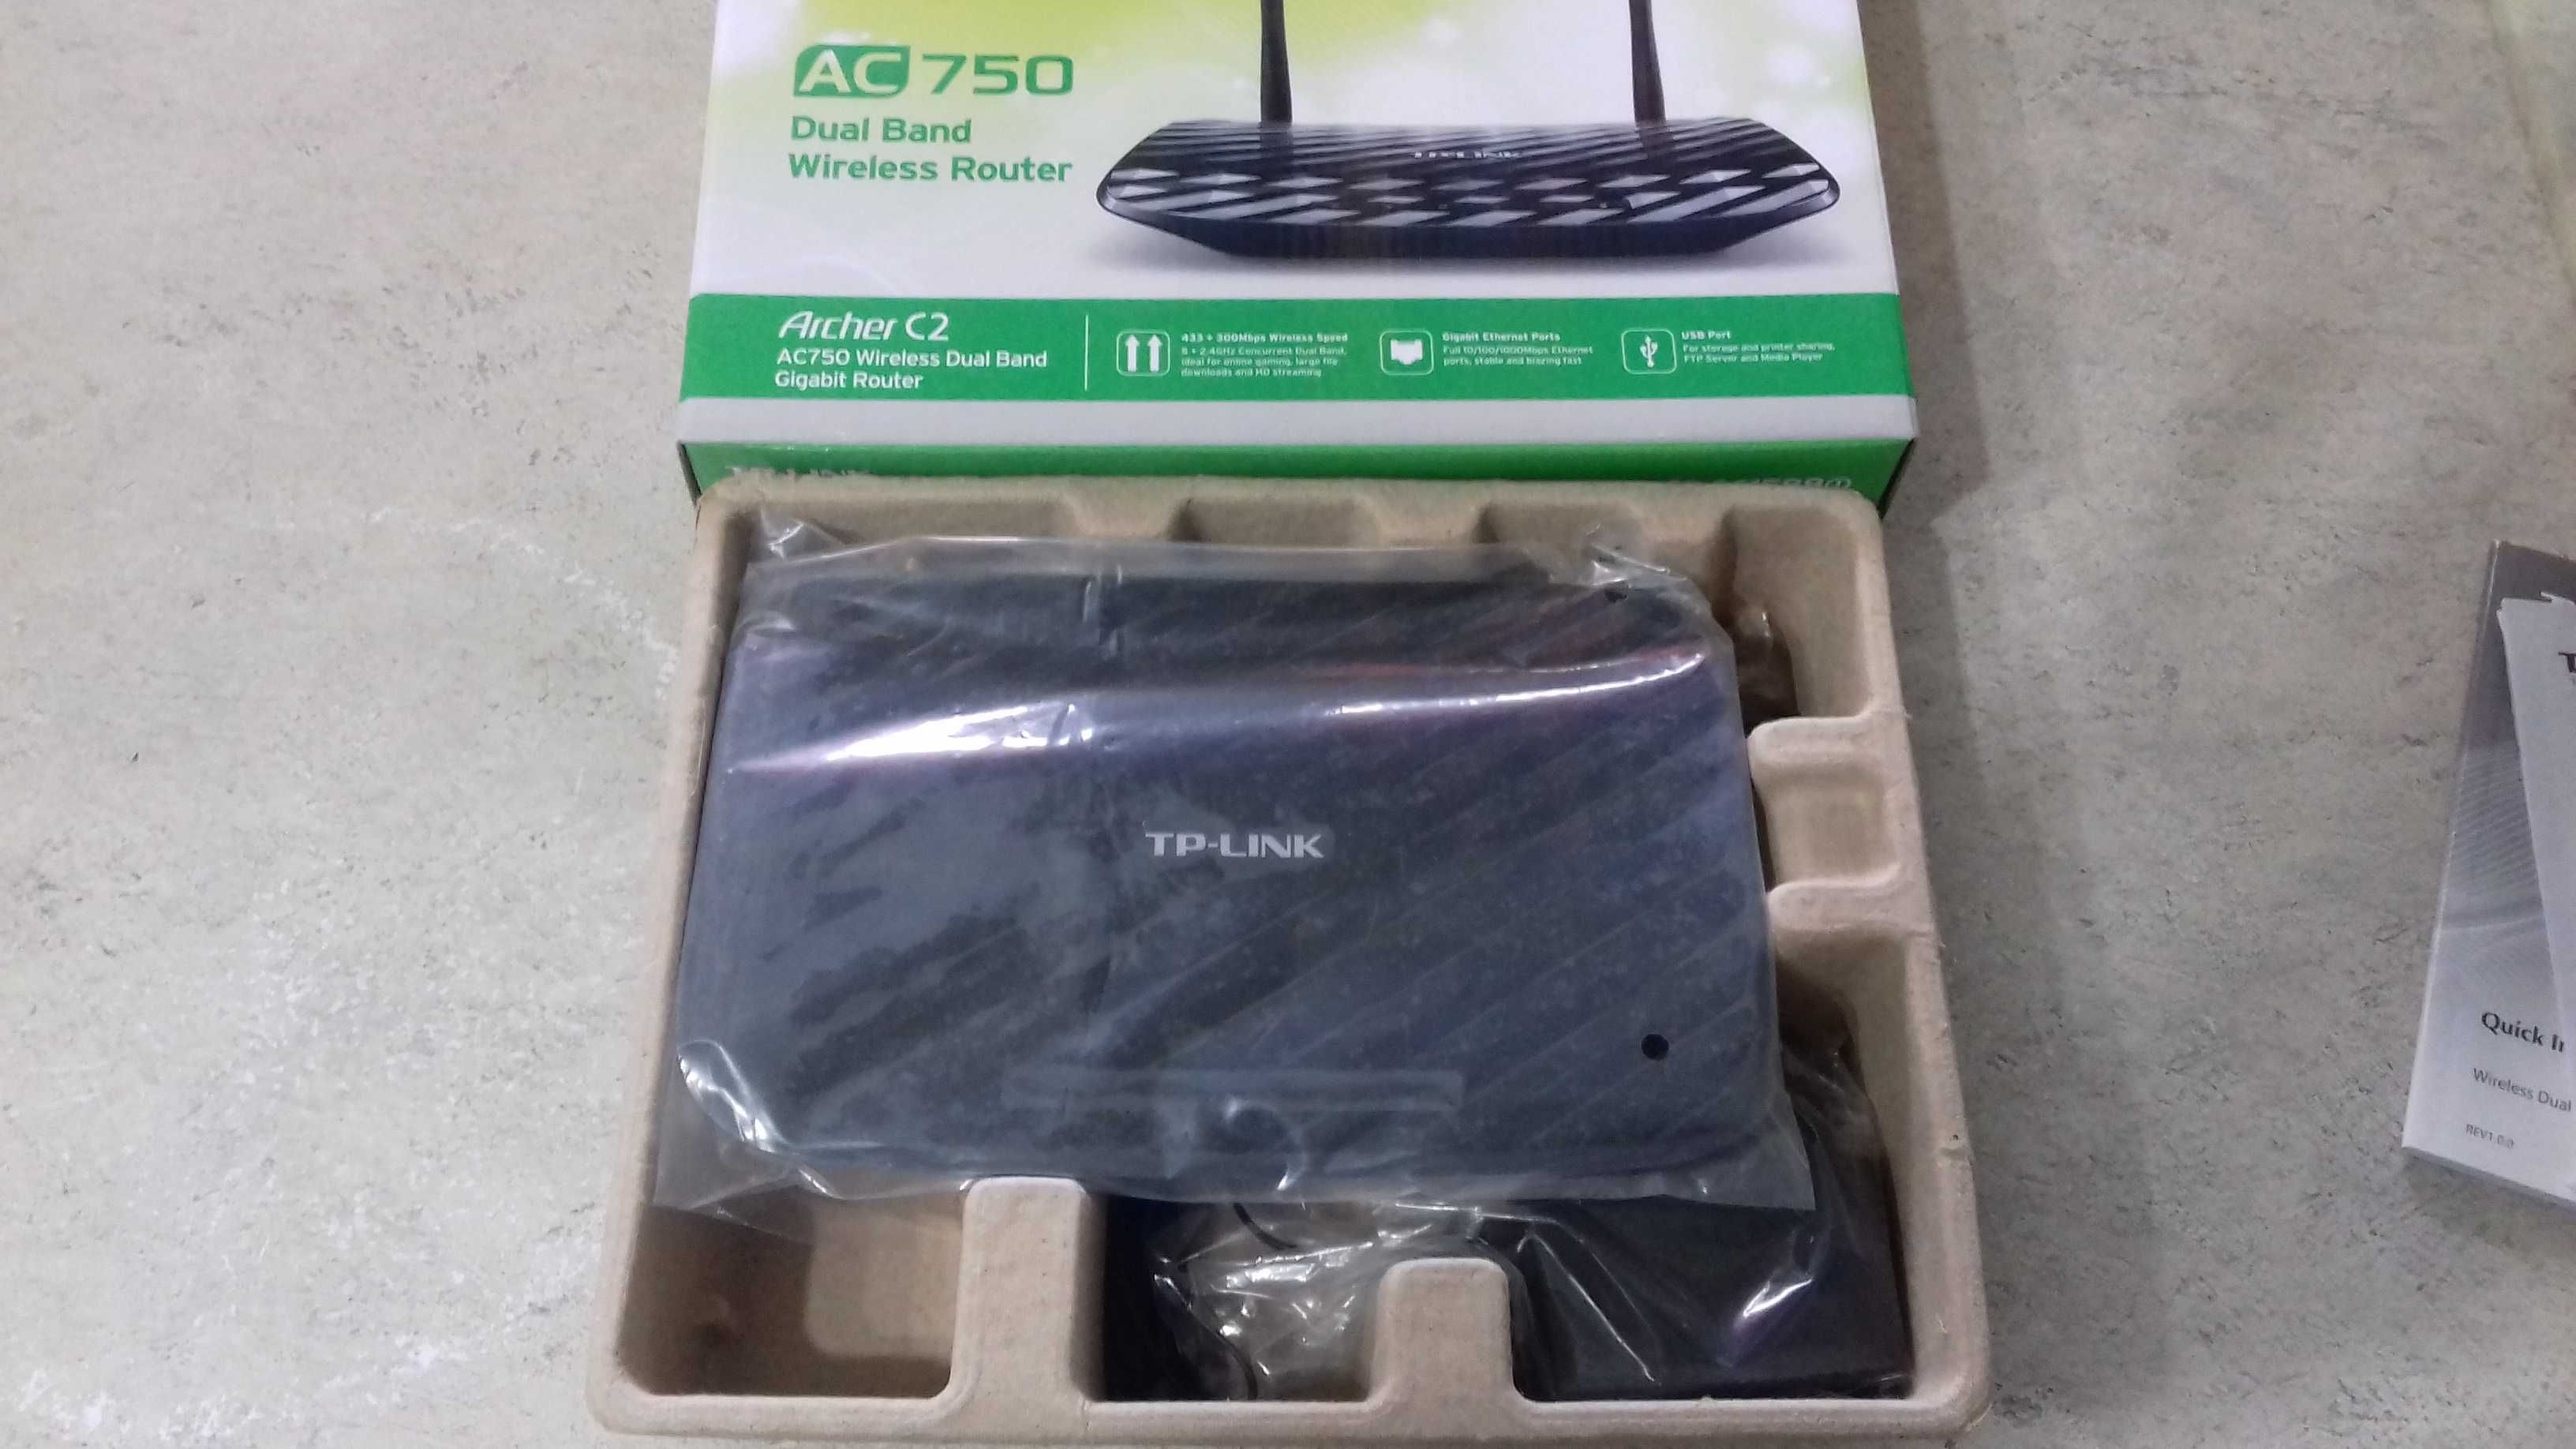 Router TP-LINK ArcherC2 AC750 Dual Band wi-fi 2.5Ghz+5Ghz modem laptop